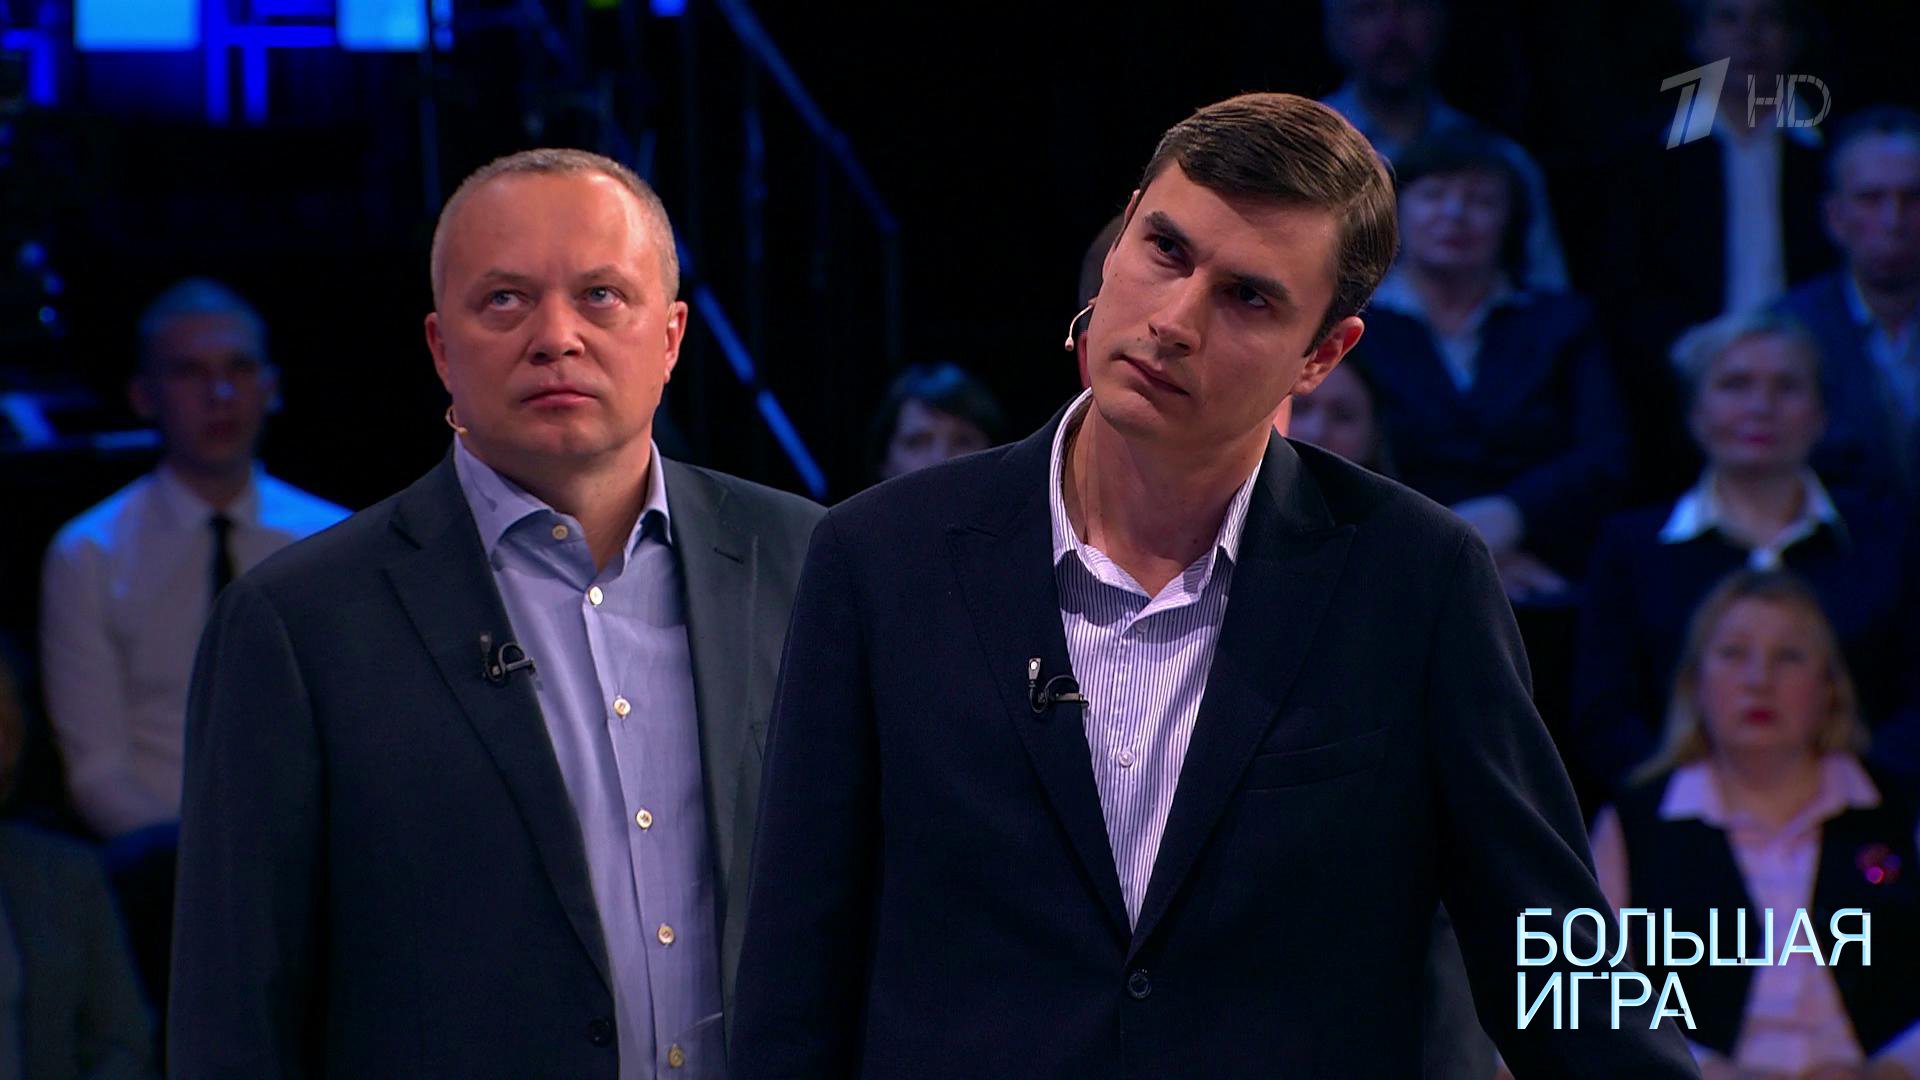 Вячеслав Никонов и Дмитрий Саймс в программе «Большая игра»